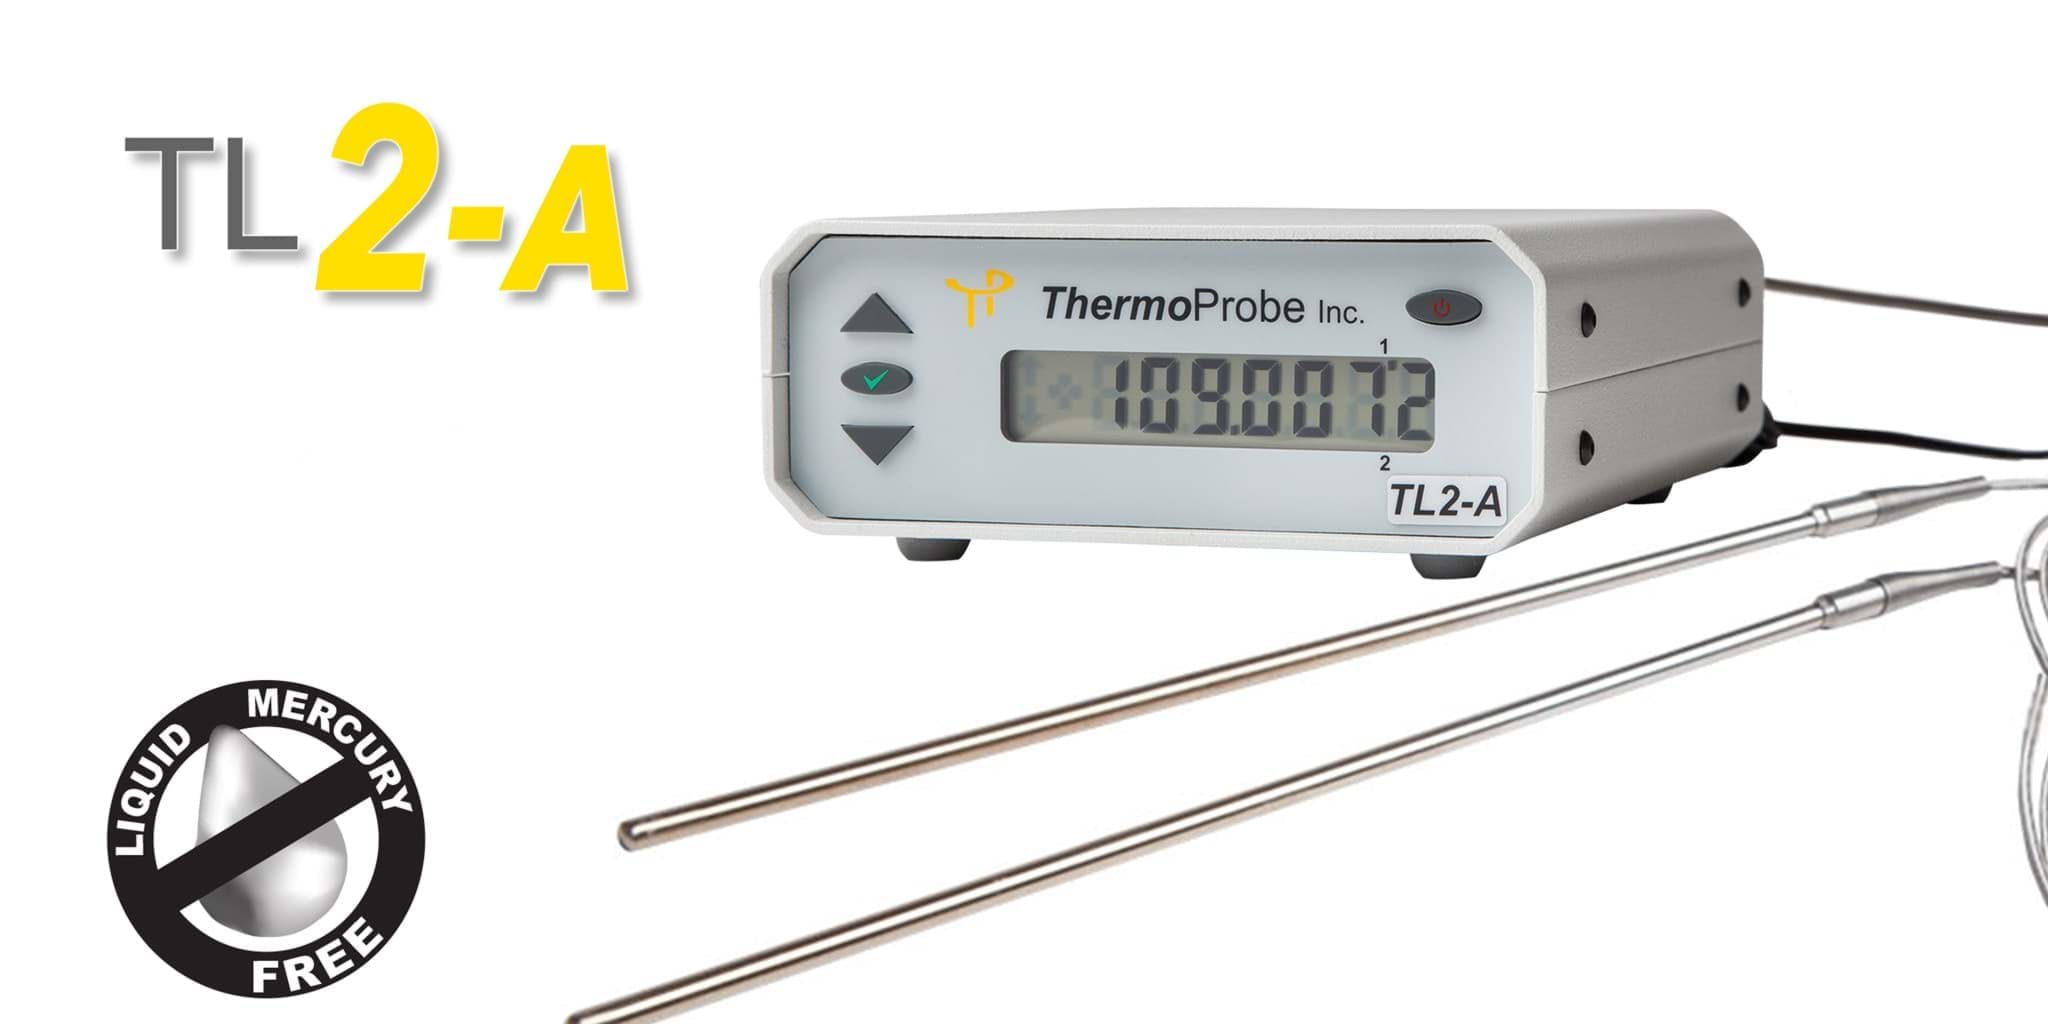 https://parkesscientific.com/media/image/496/thermoprobe-tl2a-precision-bench-top-thermometer-496.jpg